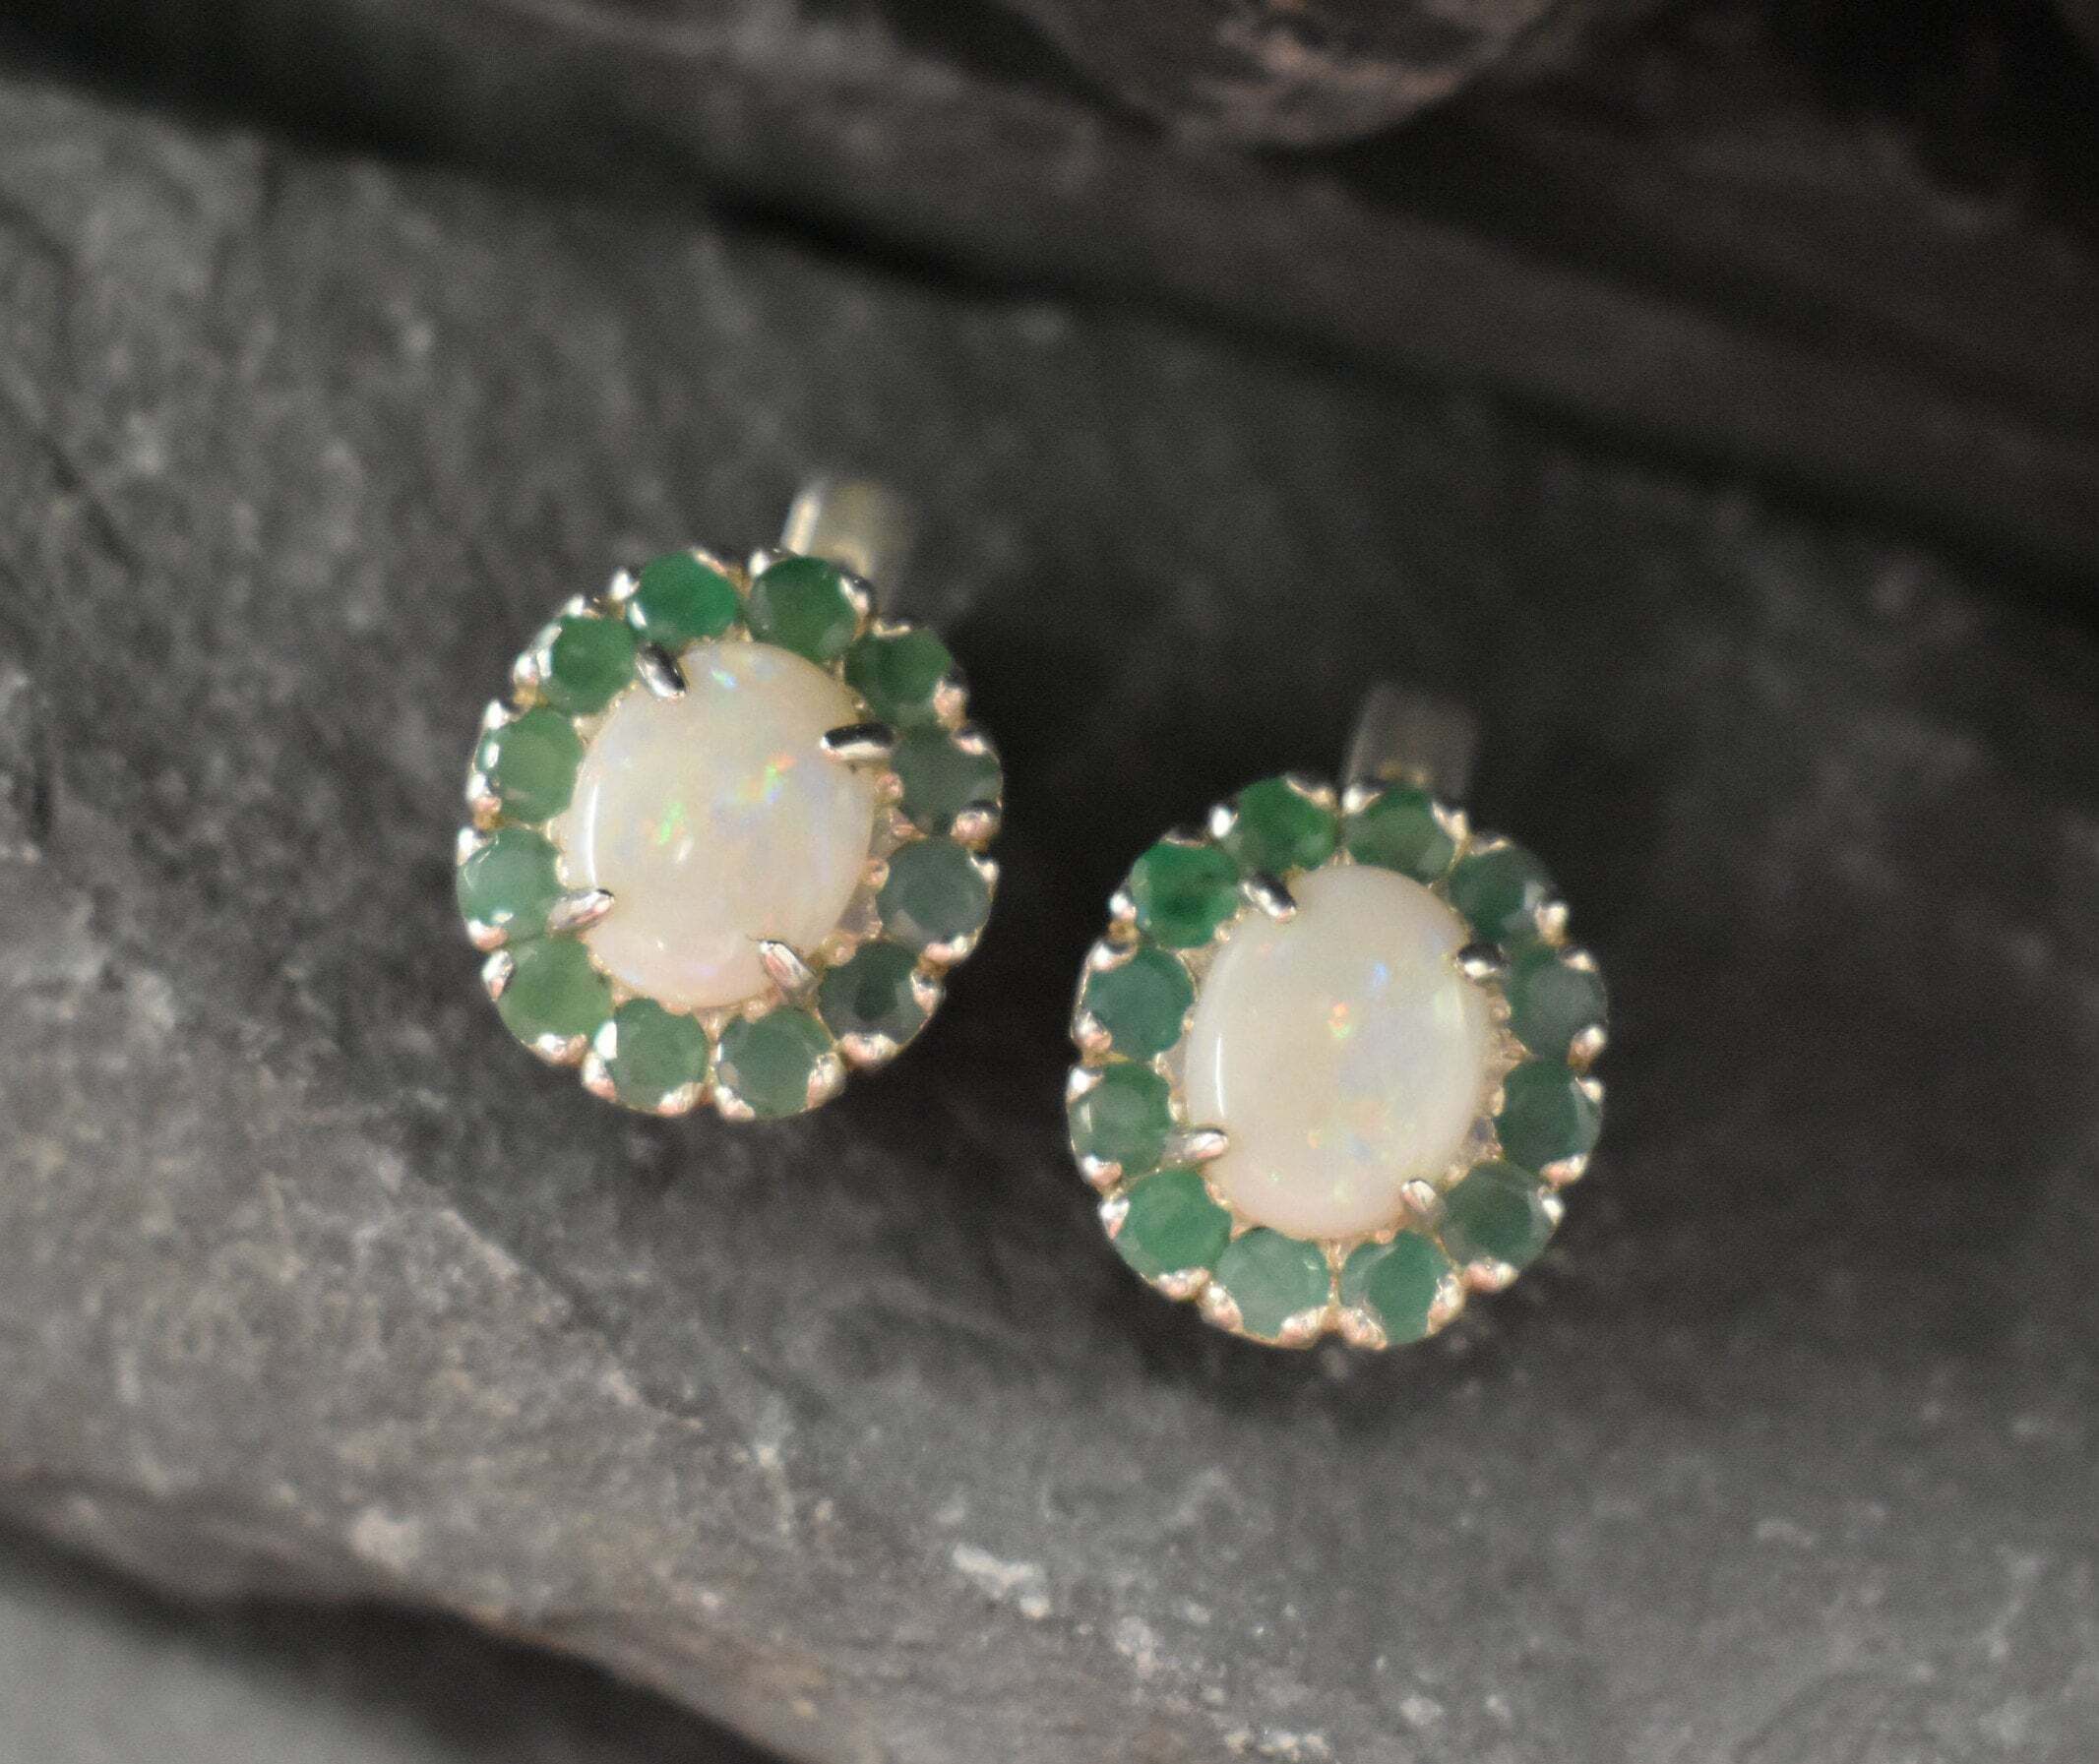 Opal Earrings, Natural Opal Earrings, Emerald Earrings, Australian Opal, Victorian Earrings, October Birthstone, 925 Silver Earrings, Opal